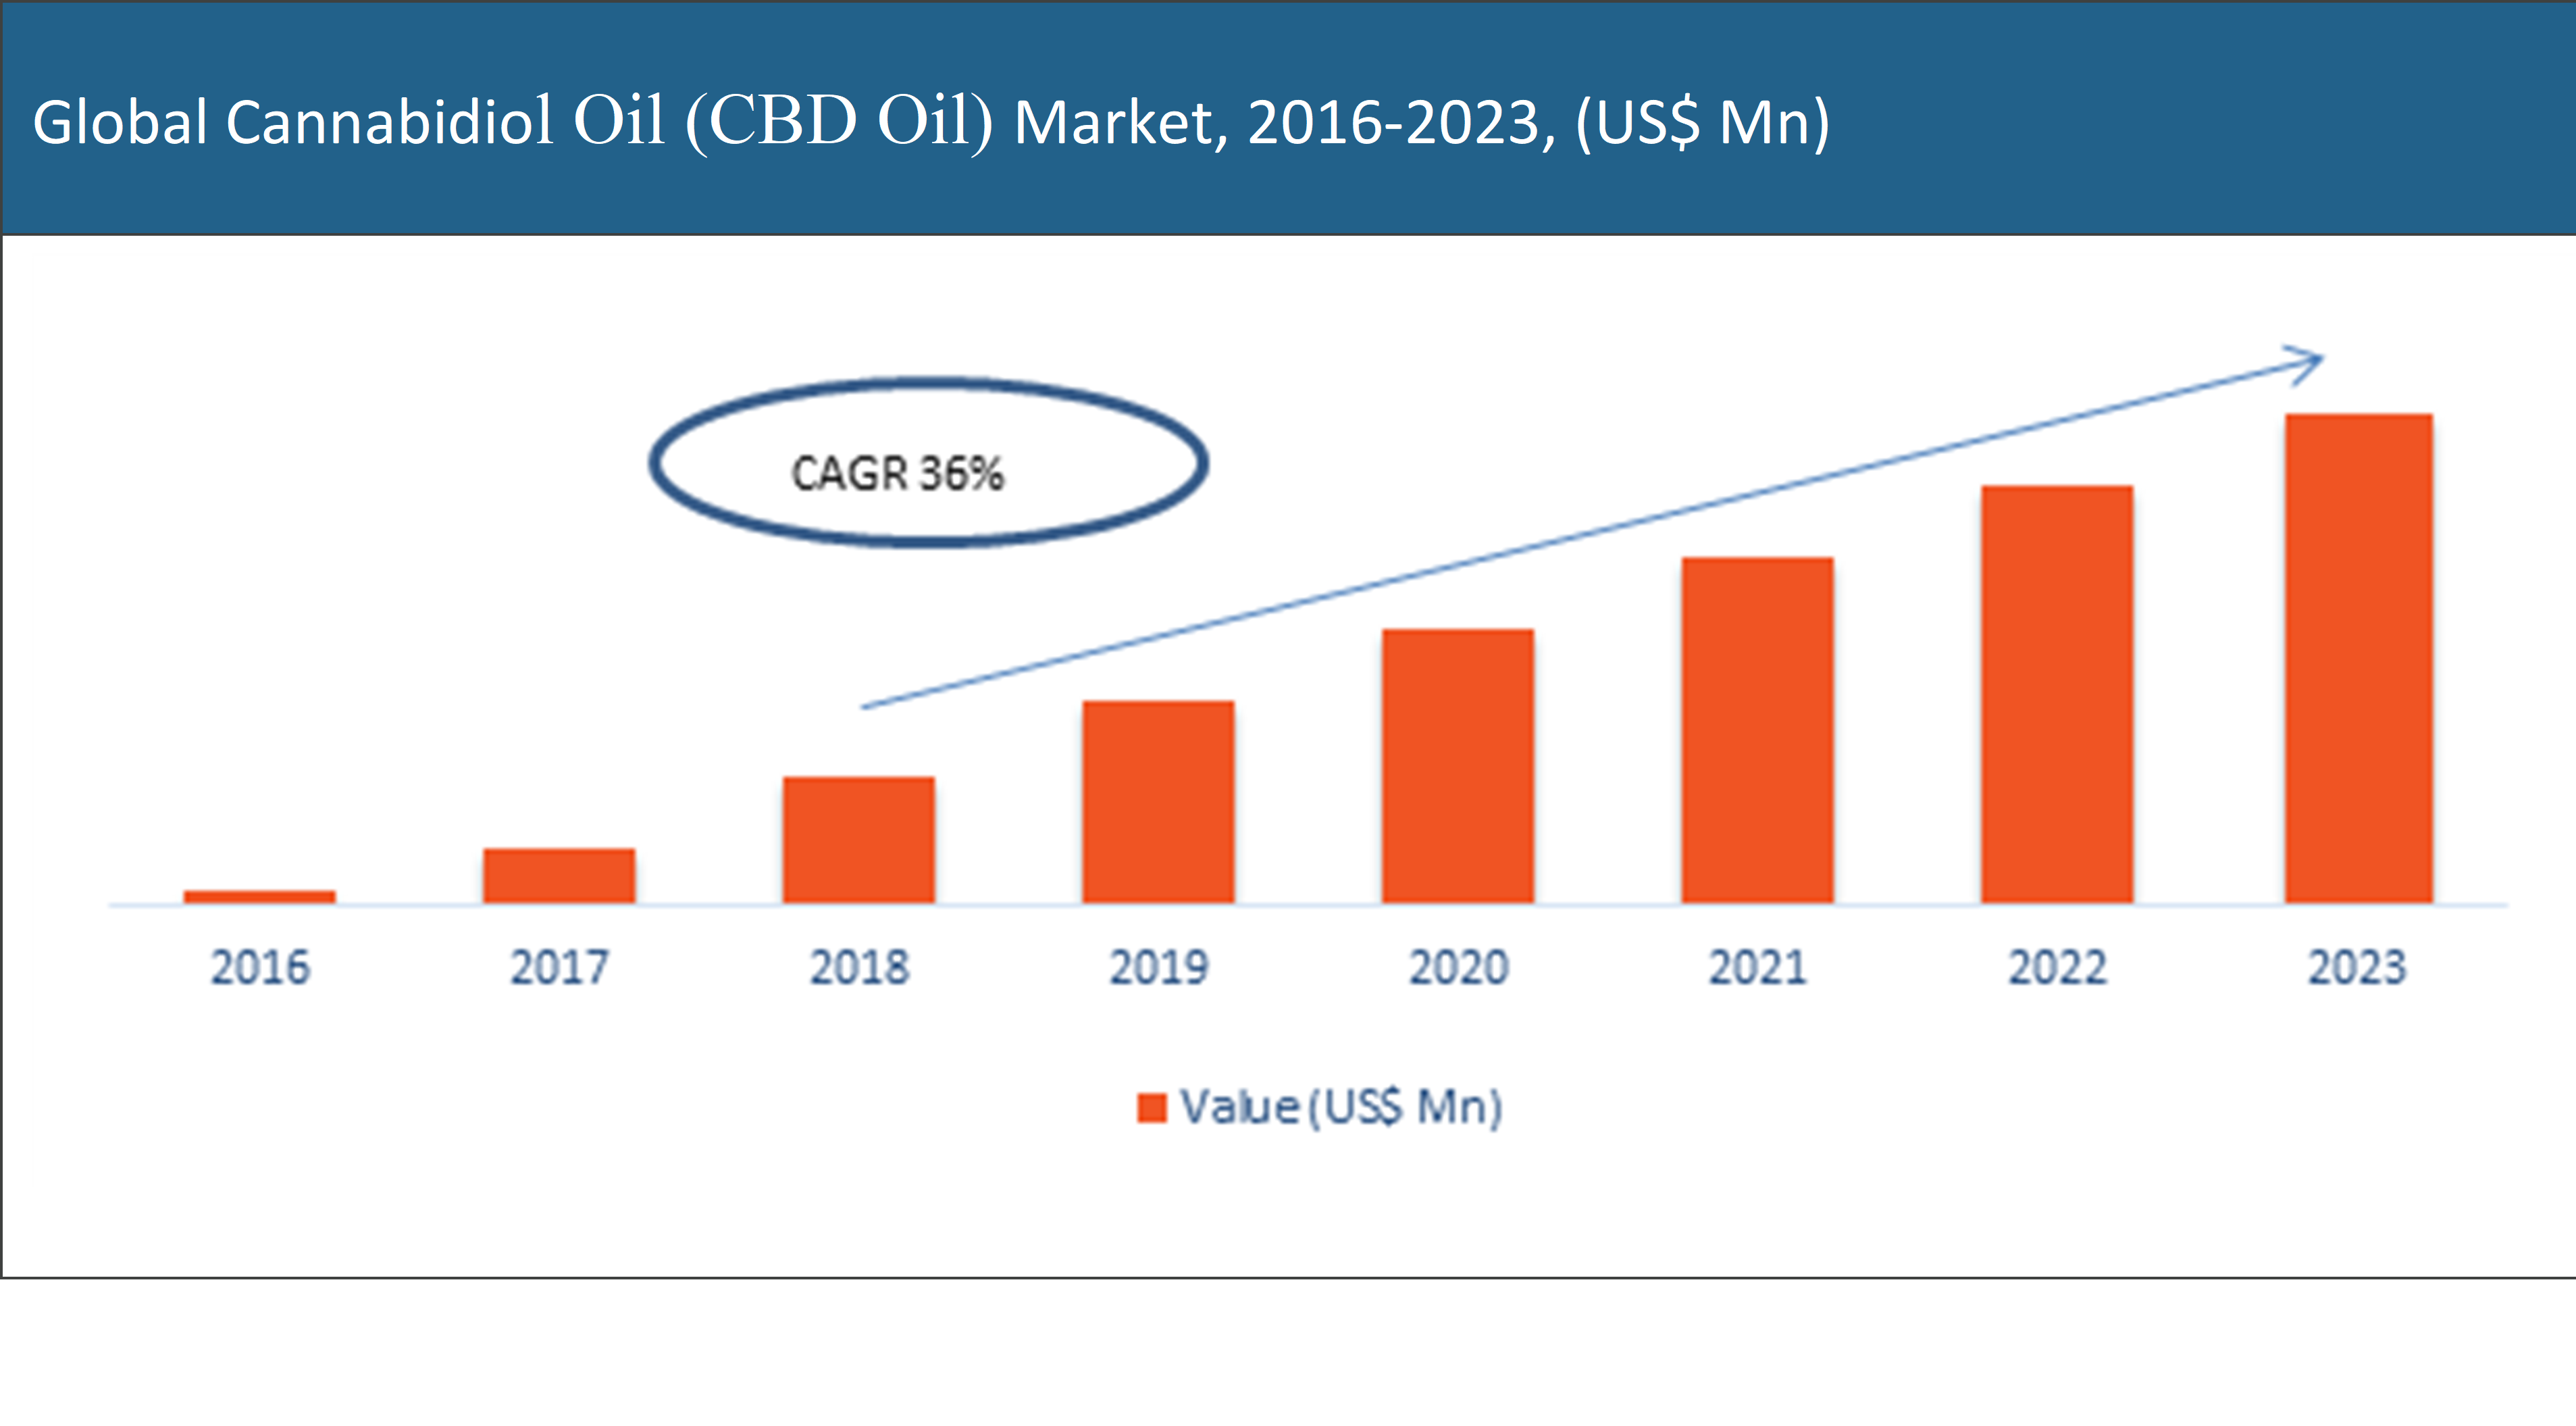 Global Cannabidiol Oil (CBD Oil) Market